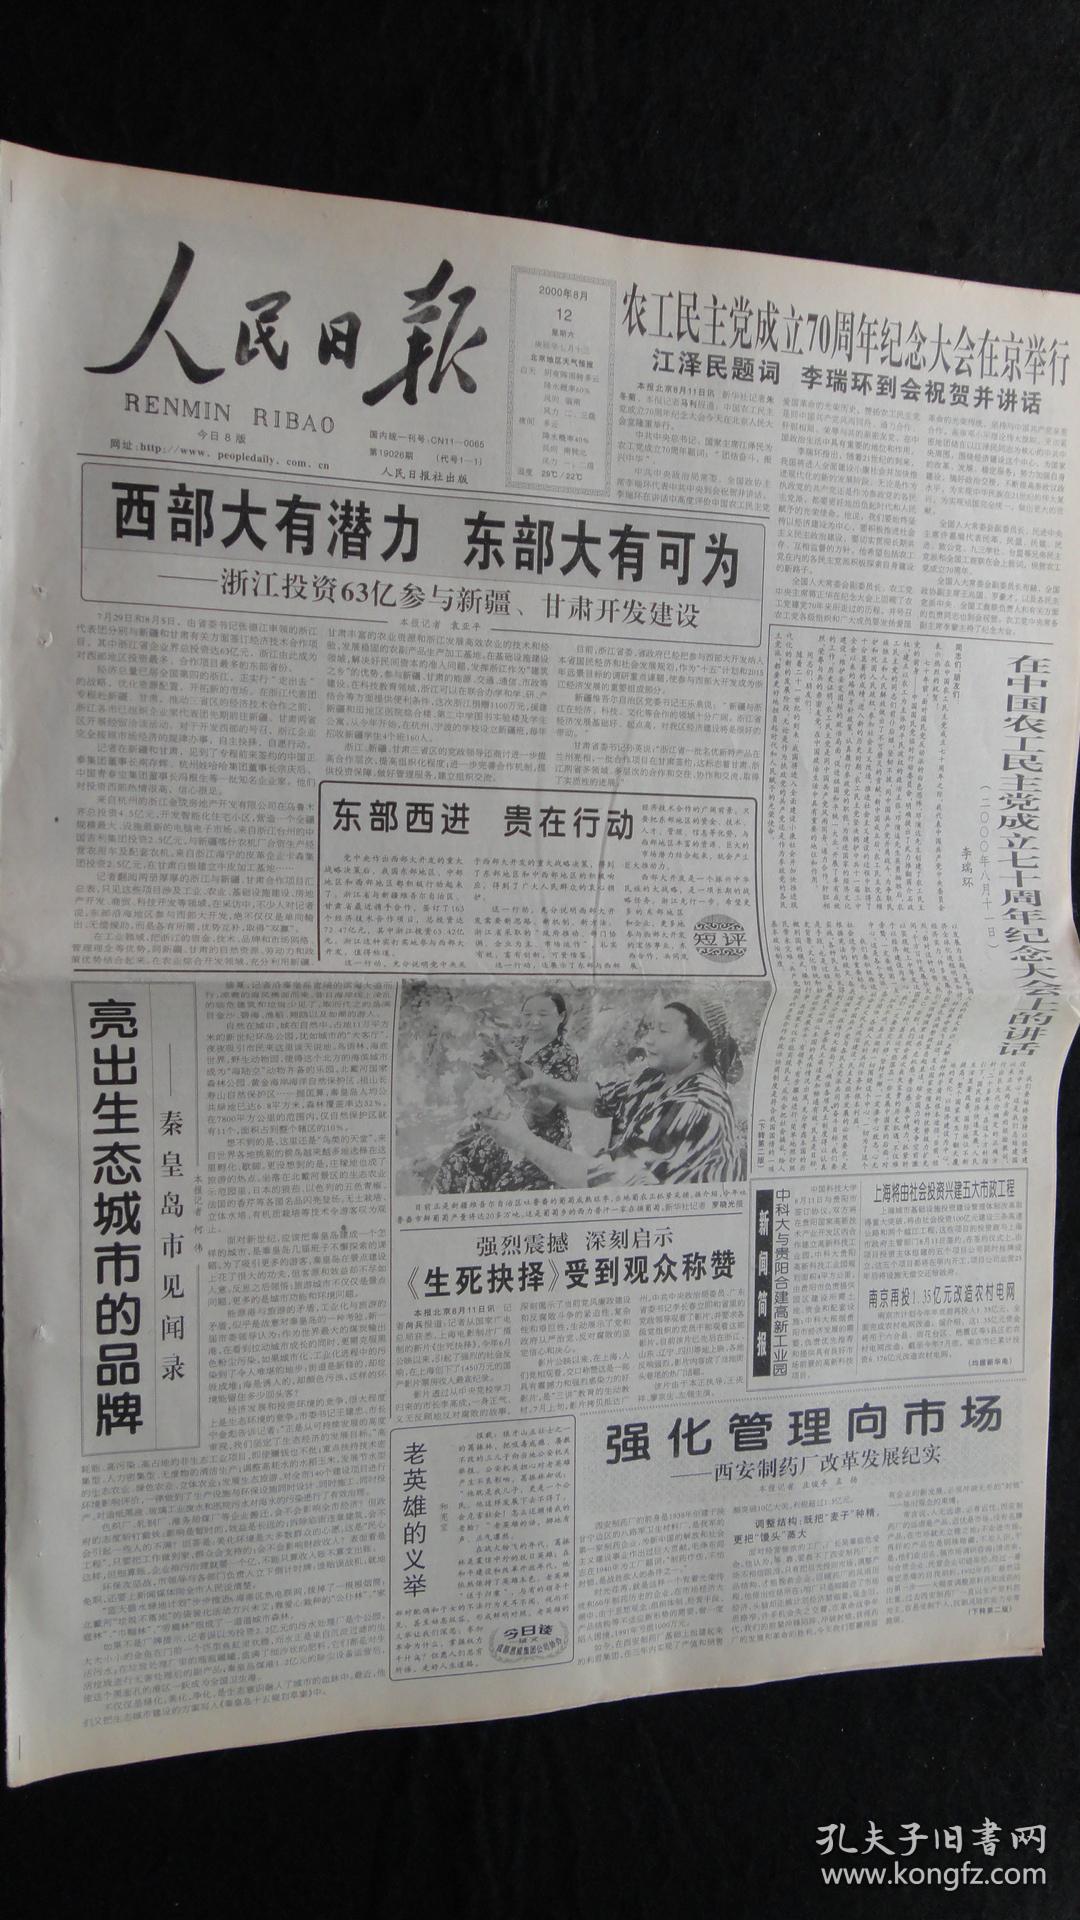 【报纸】人民日报 2000年8月12日【本报今日8版齐全】【农工民主党